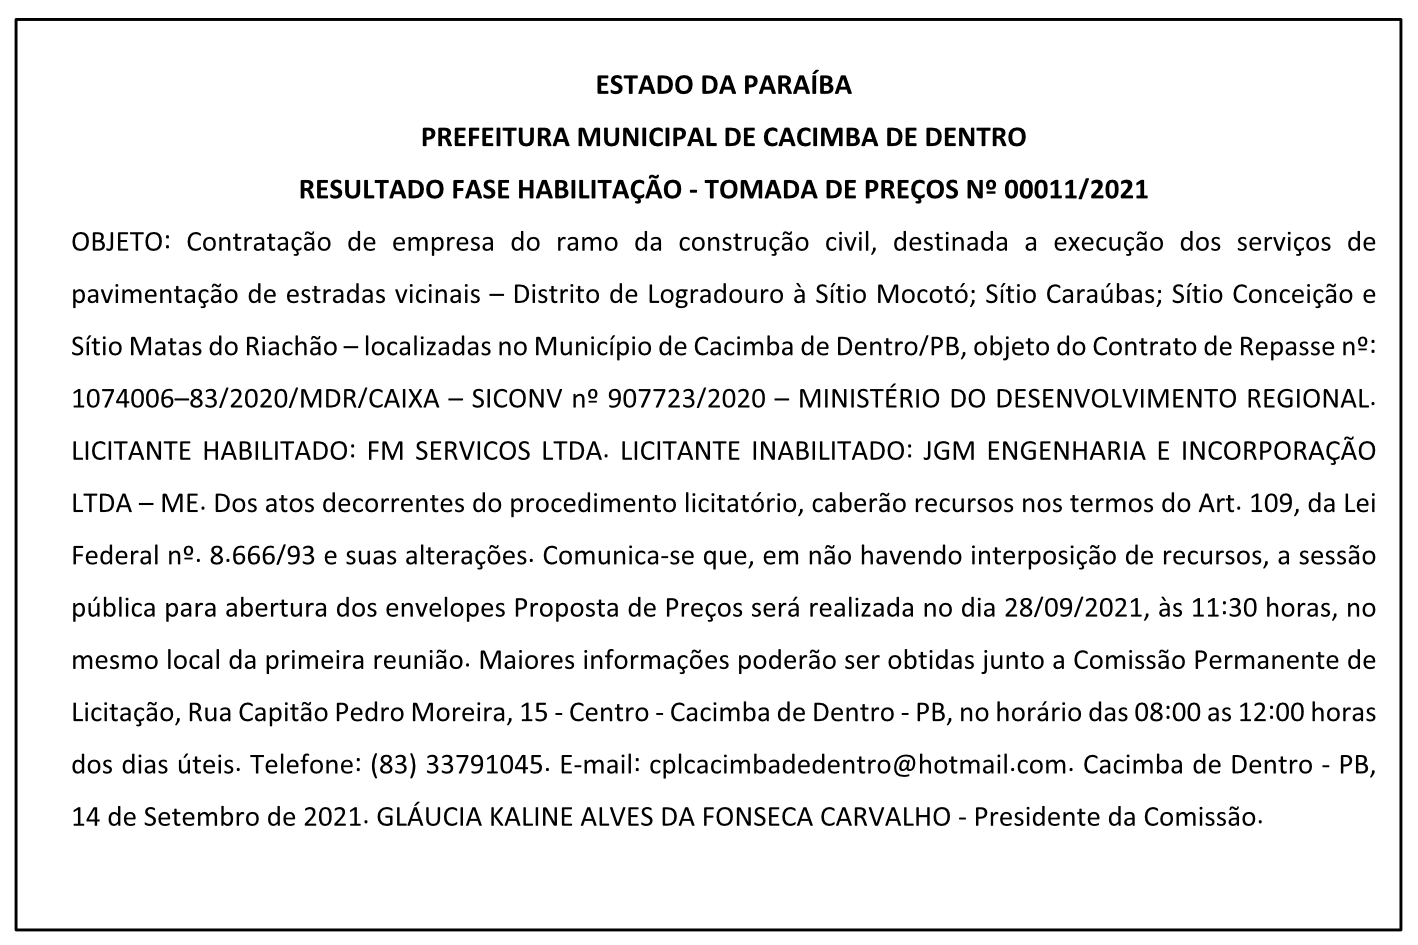 PREFEITURA MUNICIPAL DE CACIMBA DE DENTRO – RESULTADO FASE HABILITAÇÃO – TOMADA DE PREÇOS Nº 00011/2021